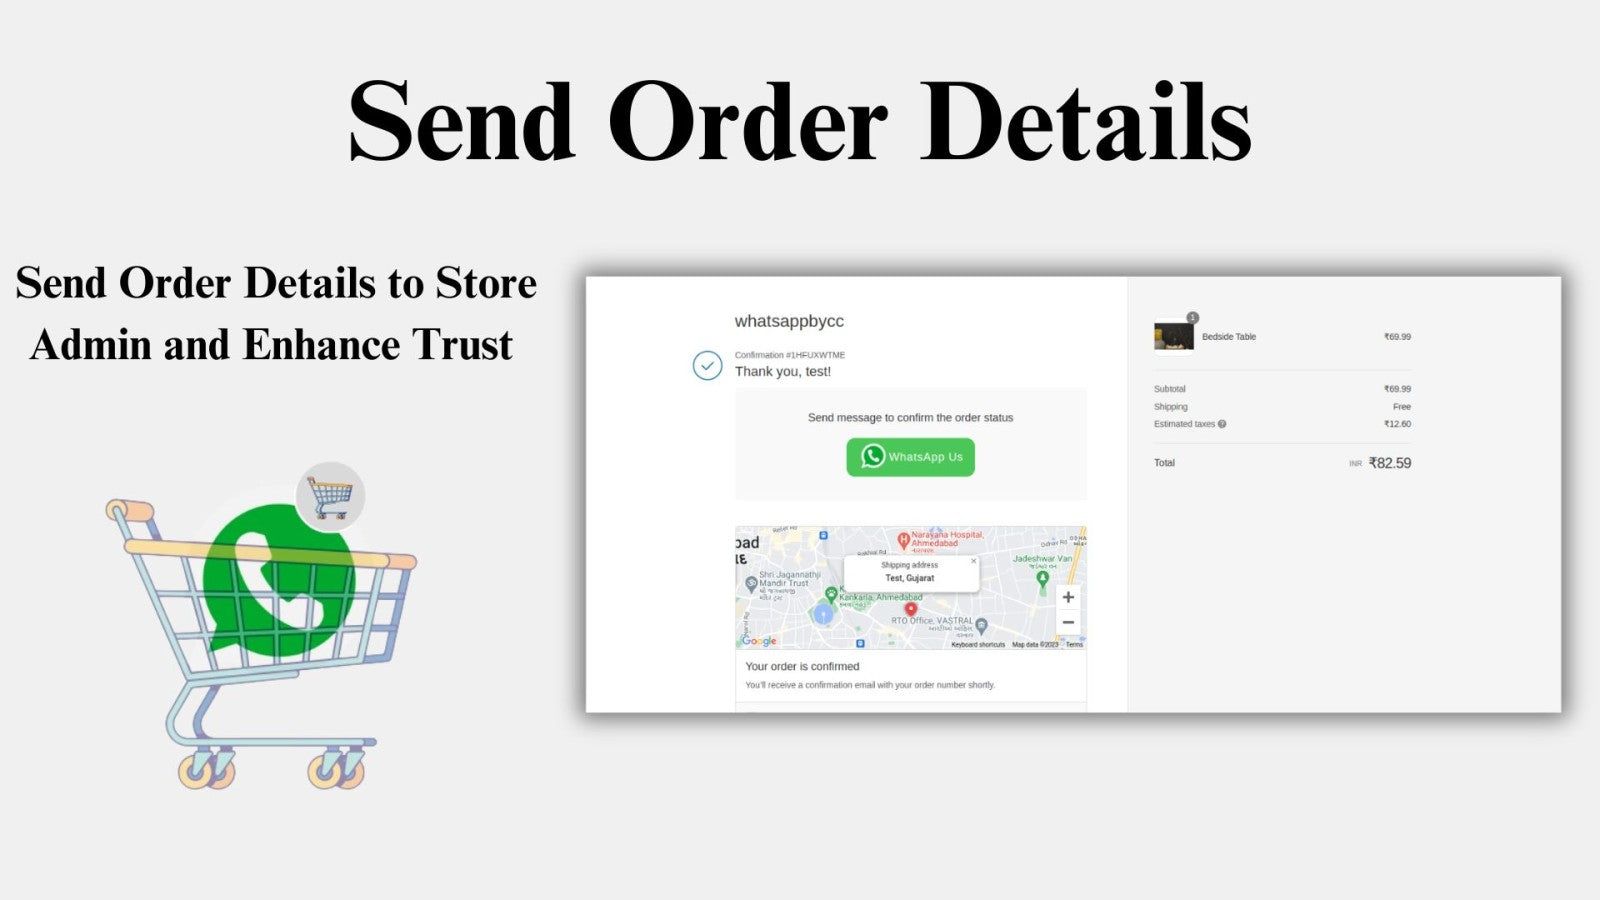 Send Order Details Image